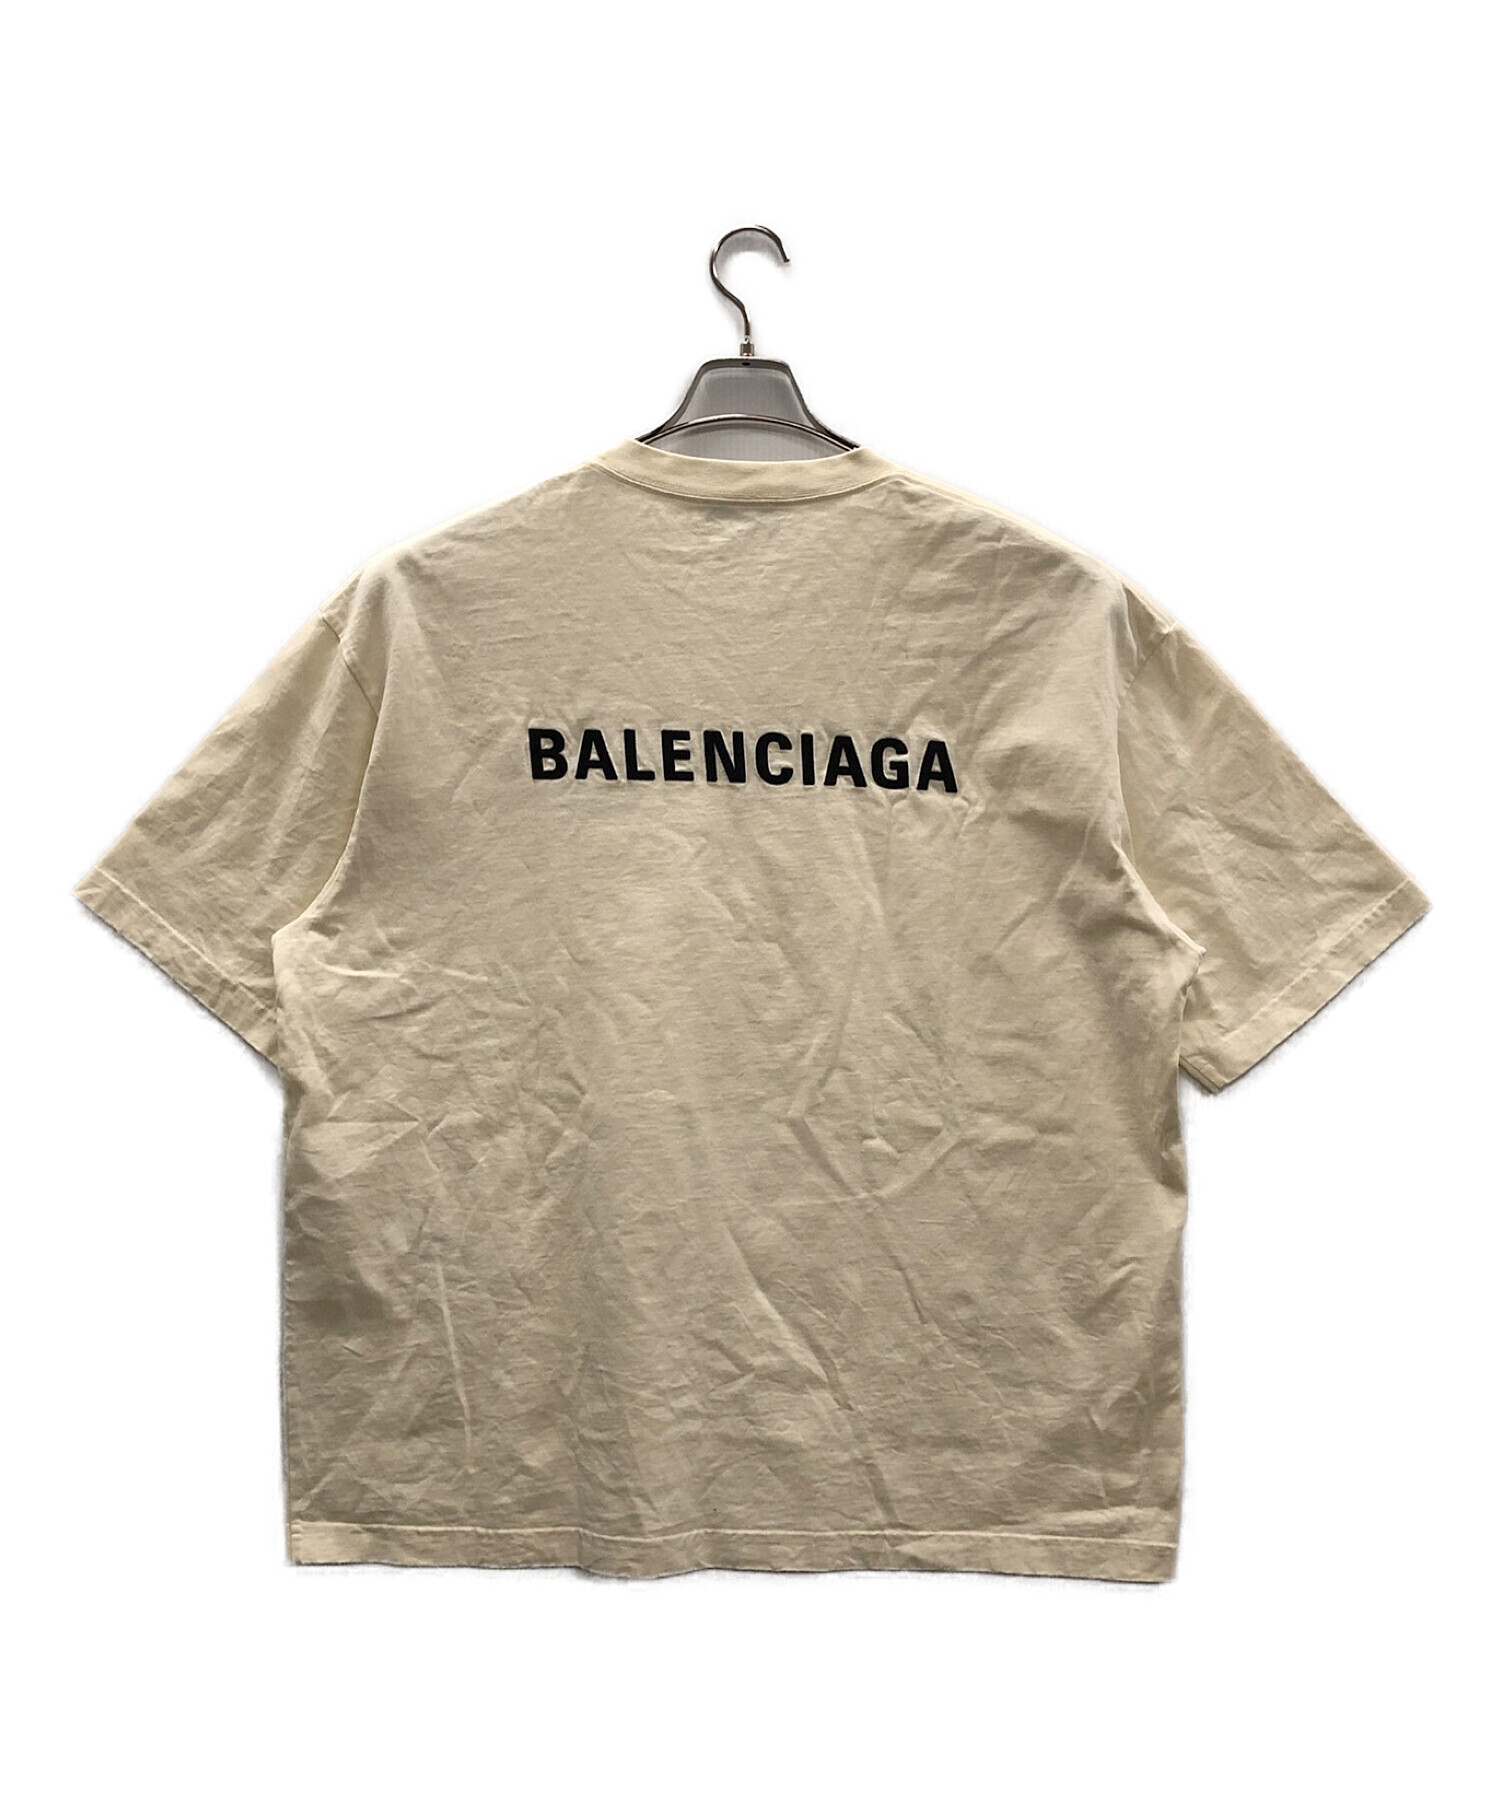 BALENCIAGA tシャツ  xl